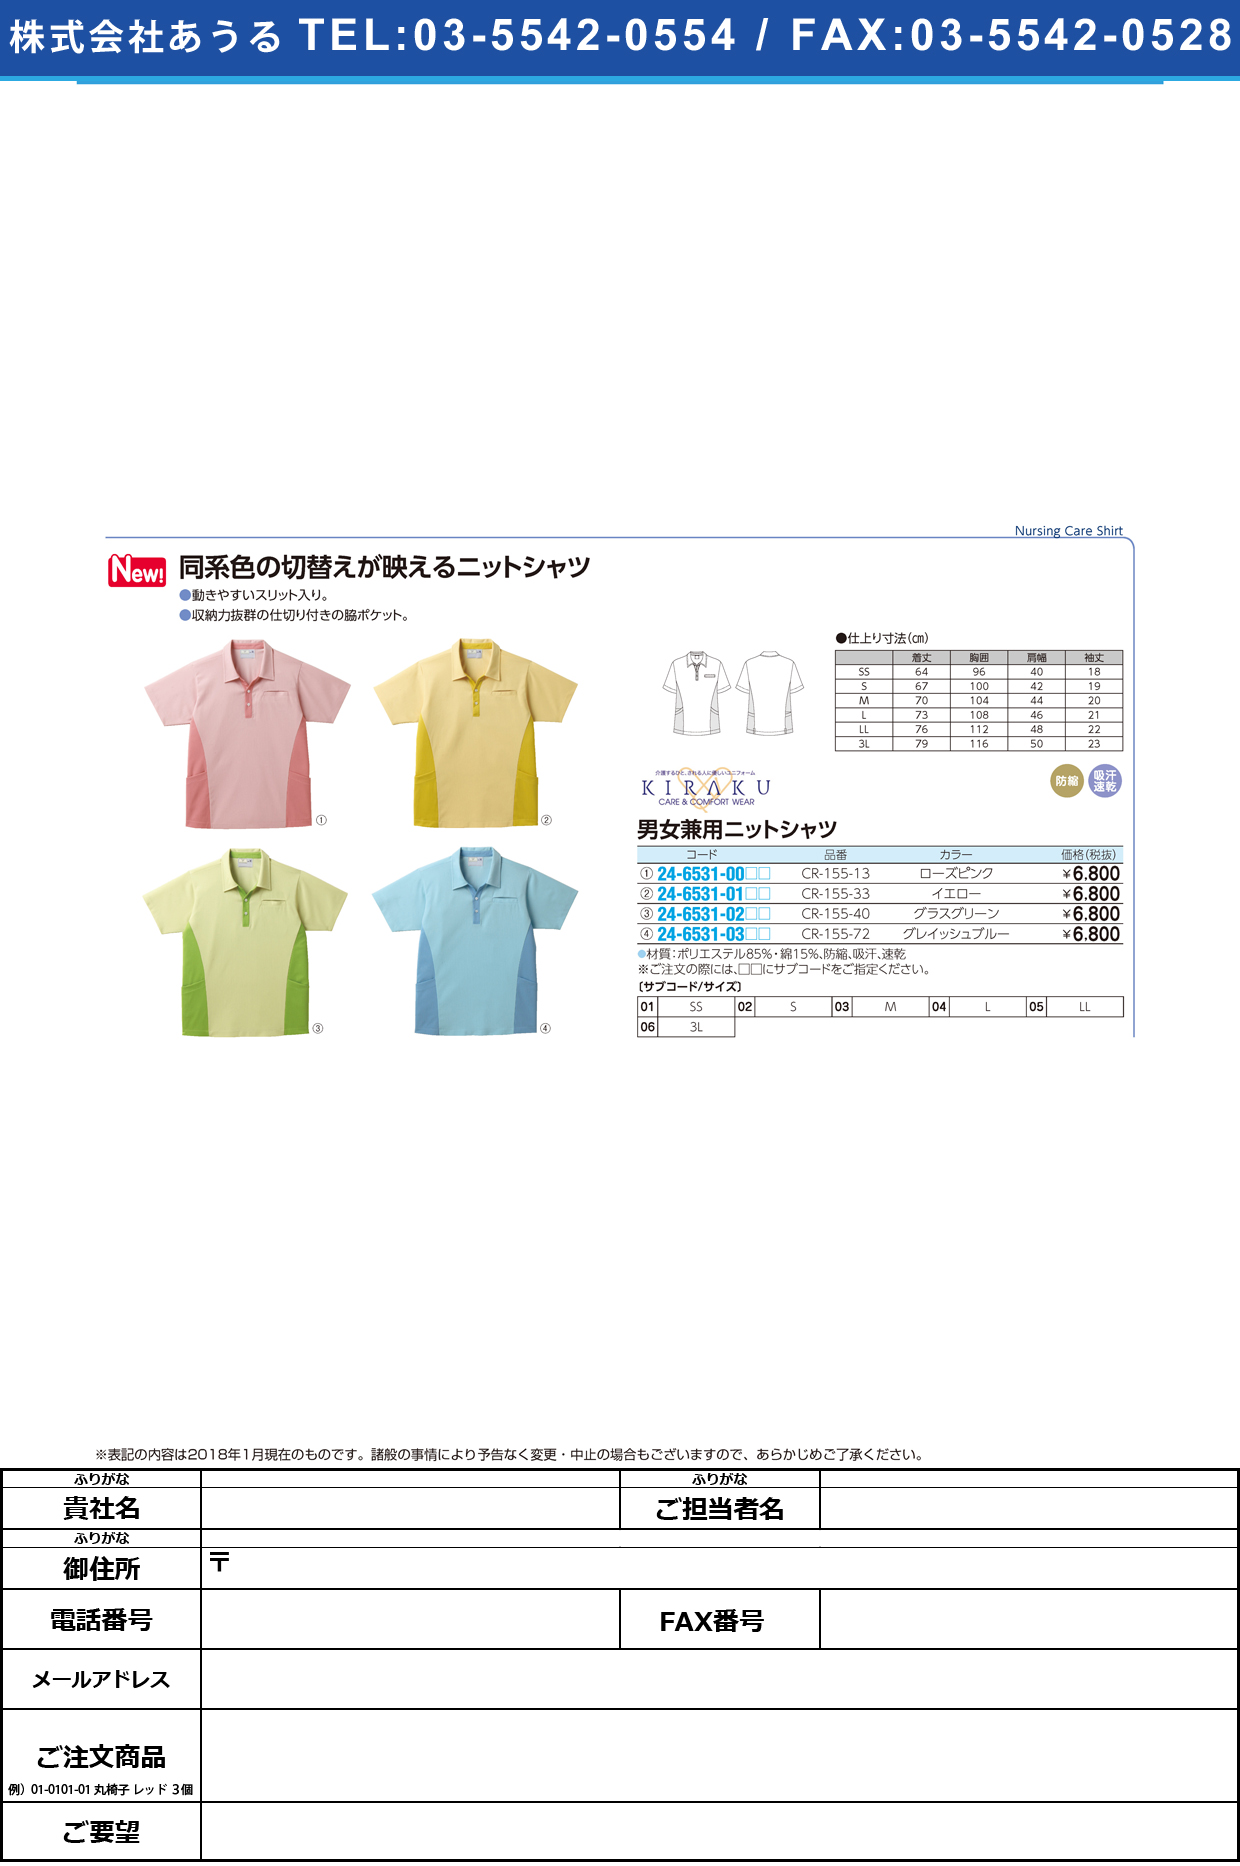 (24-6531-03)キラクニットシャツ（男女兼用） CR155-72(ｸﾞﾚｲｯｼｭﾌﾞﾙｰ ｷﾗｸﾆｯﾄｼｬﾂ(ﾀﾞﾝｼﾞｮｹﾝﾖｳ ＬＬ(トンボ)【1枚単位】【2018年カタログ商品】